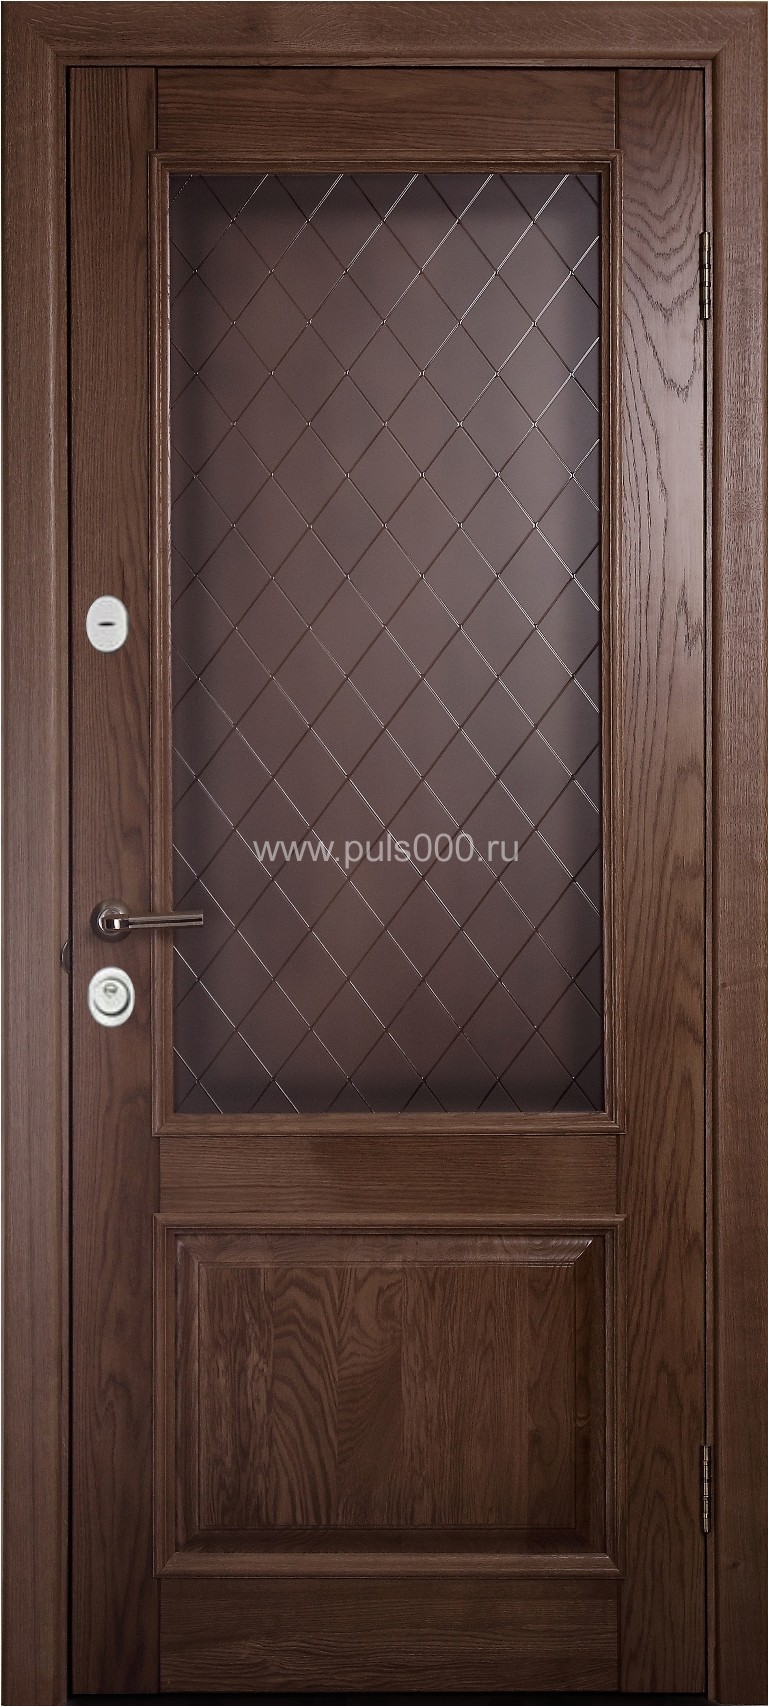 Элитная металлическая дверь с массивом EL-1716, цена 91 000  руб.